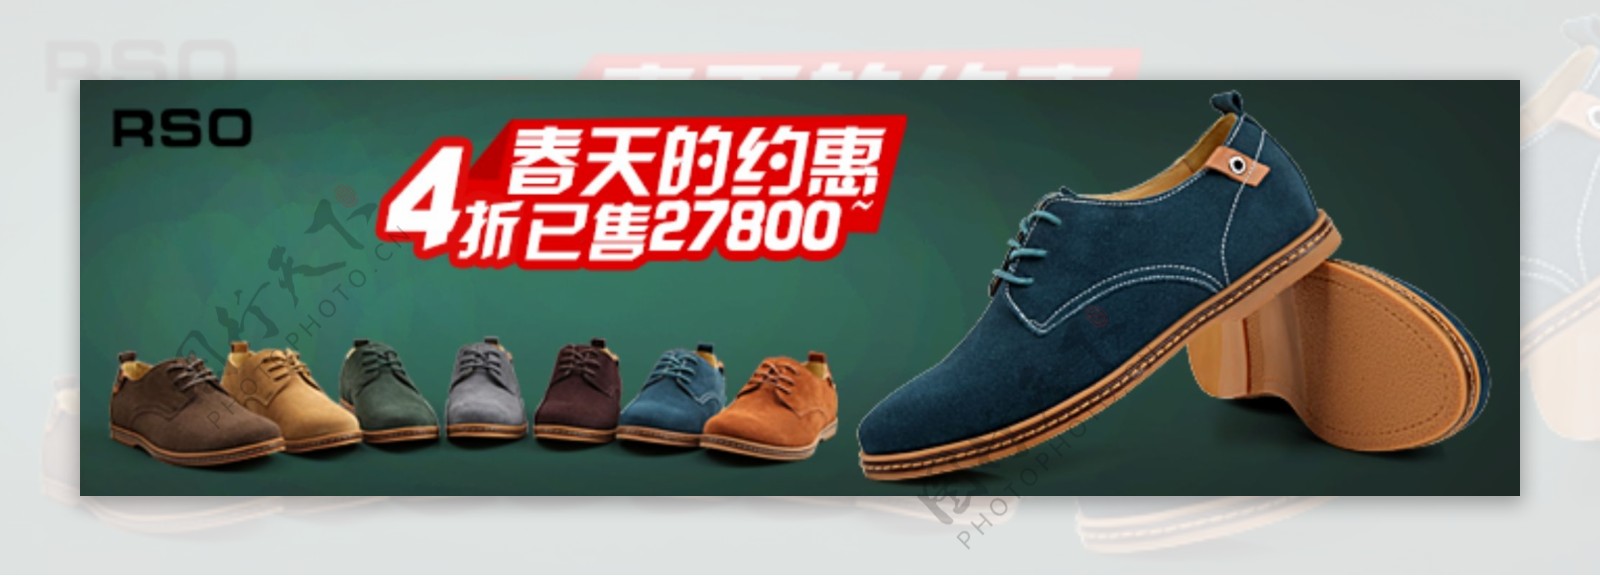 经典男式鞋子广告